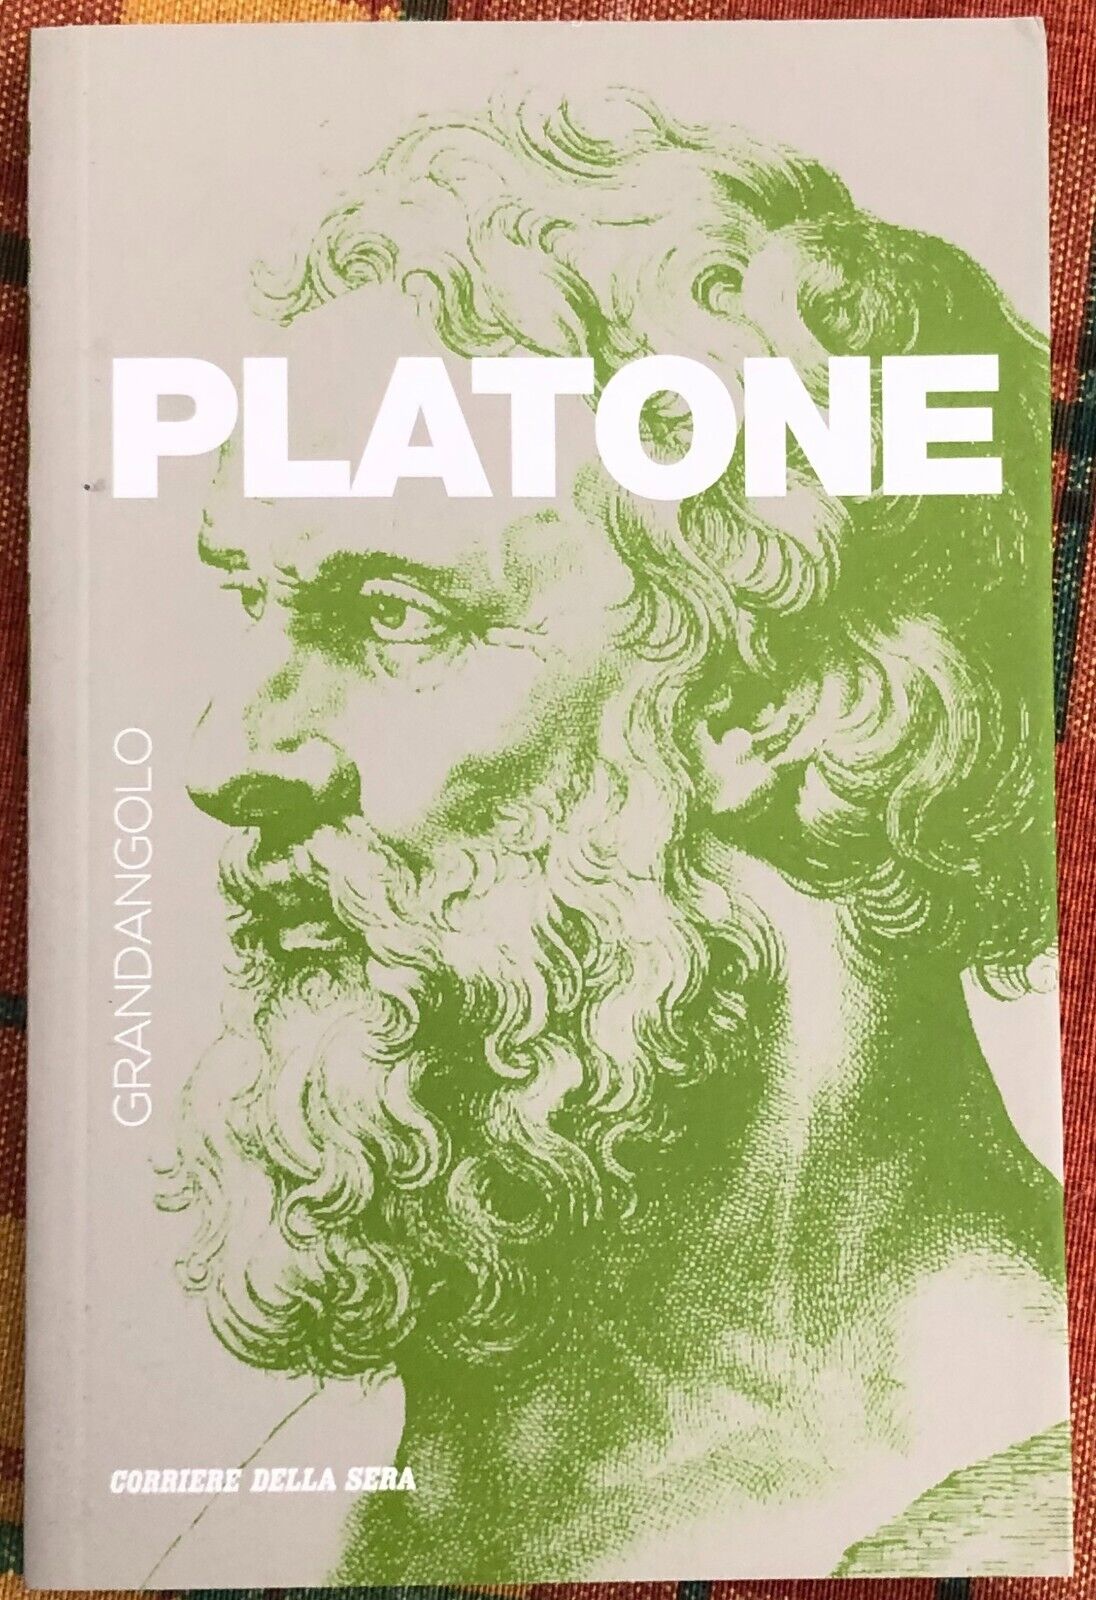 Grandangolo n. 3 - Platone di Roberto Radice, 2019, Corriere Della Sera